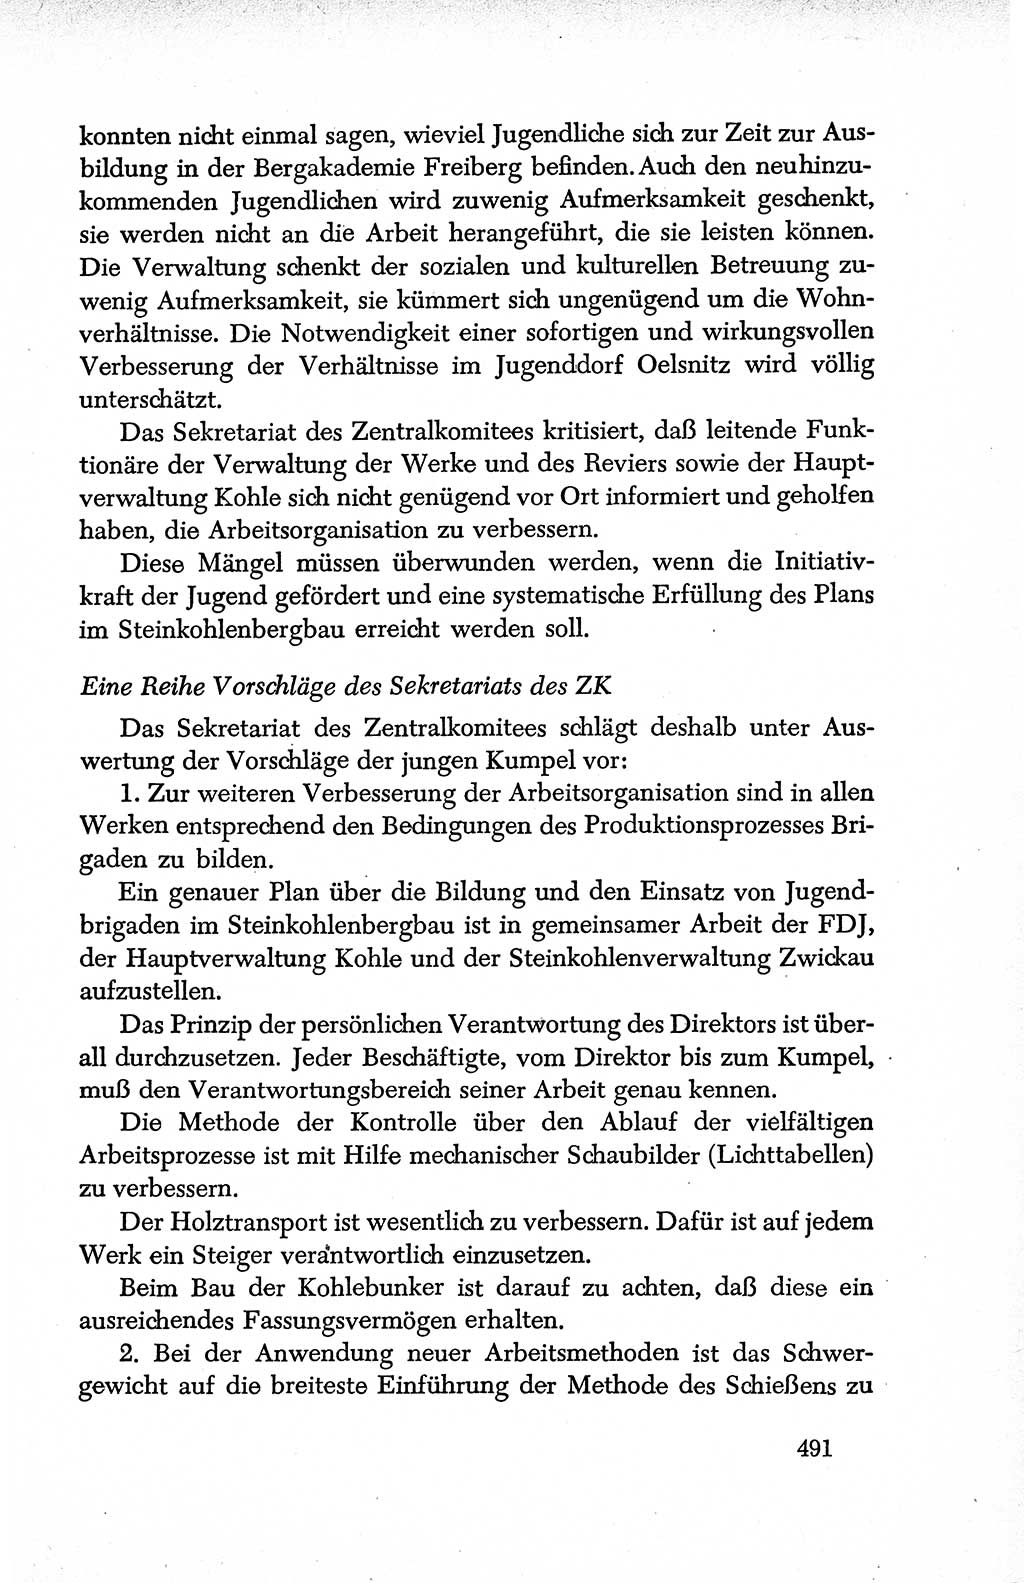 Dokumente der Sozialistischen Einheitspartei Deutschlands (SED) [Deutsche Demokratische Republik (DDR)] 1950-1952, Seite 491 (Dok. SED DDR 1950-1952, S. 491)